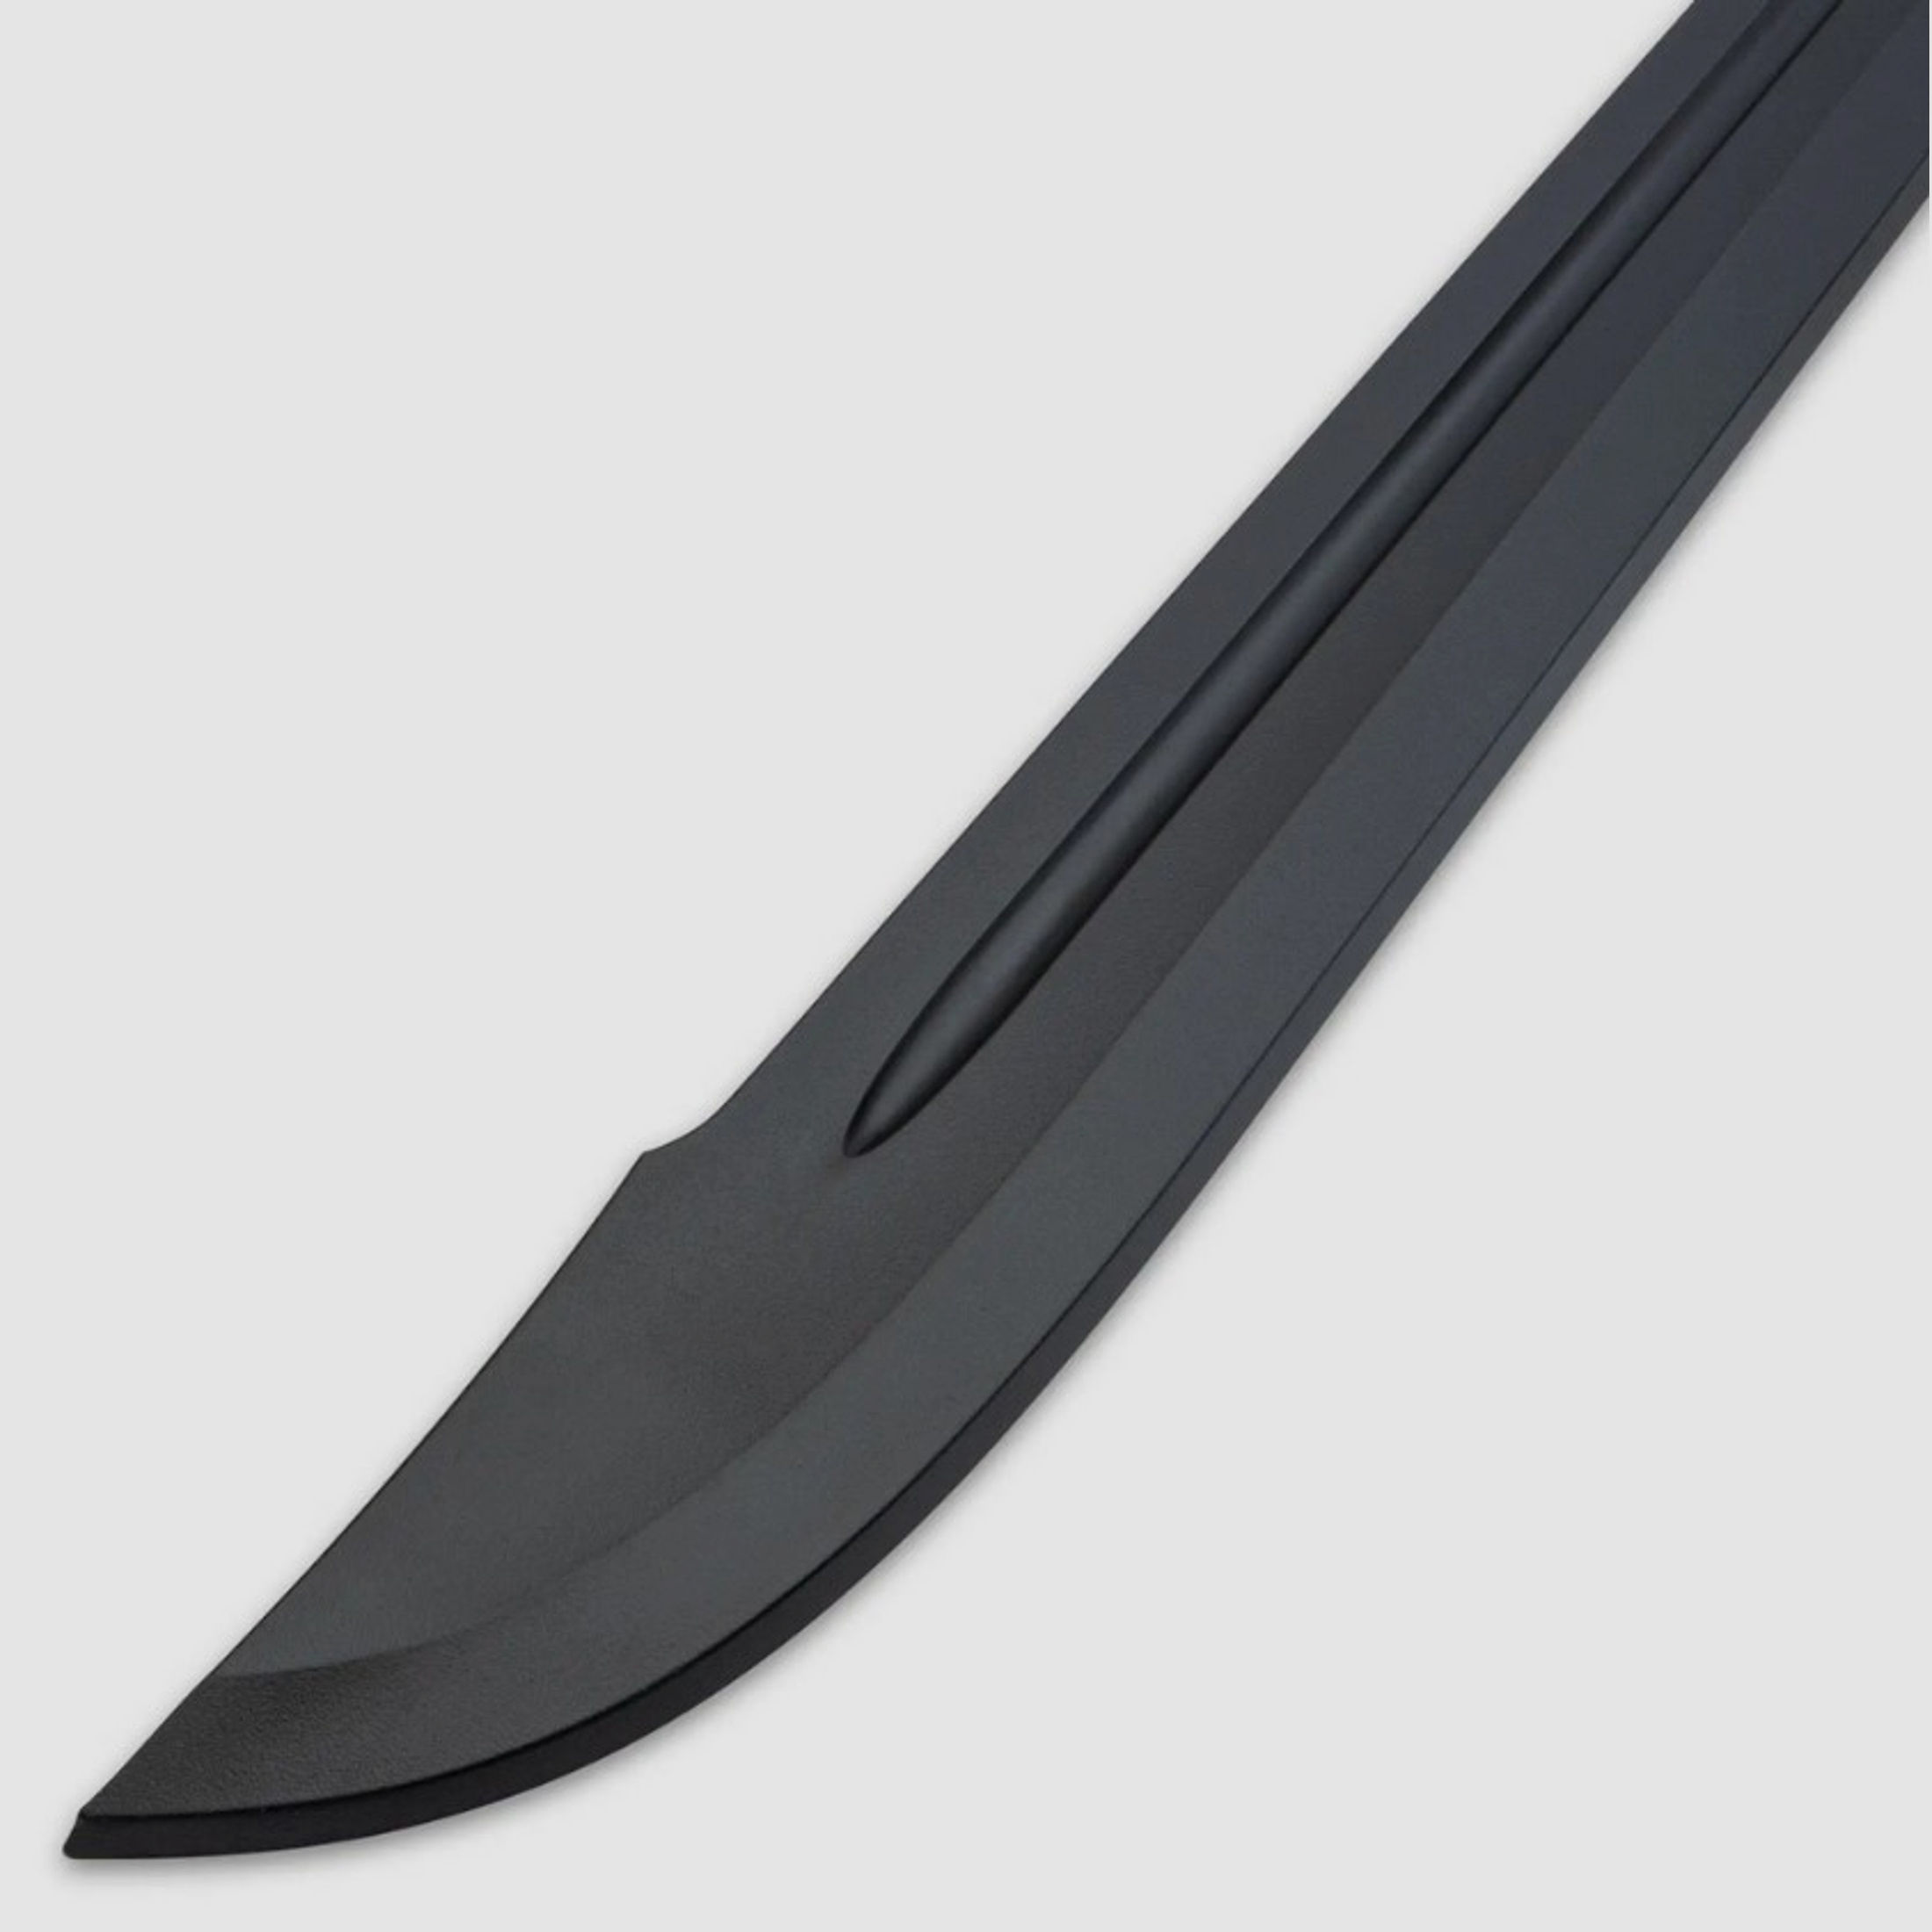 Honshu Boshin Grosse Messer Trainingsschwert | 42099